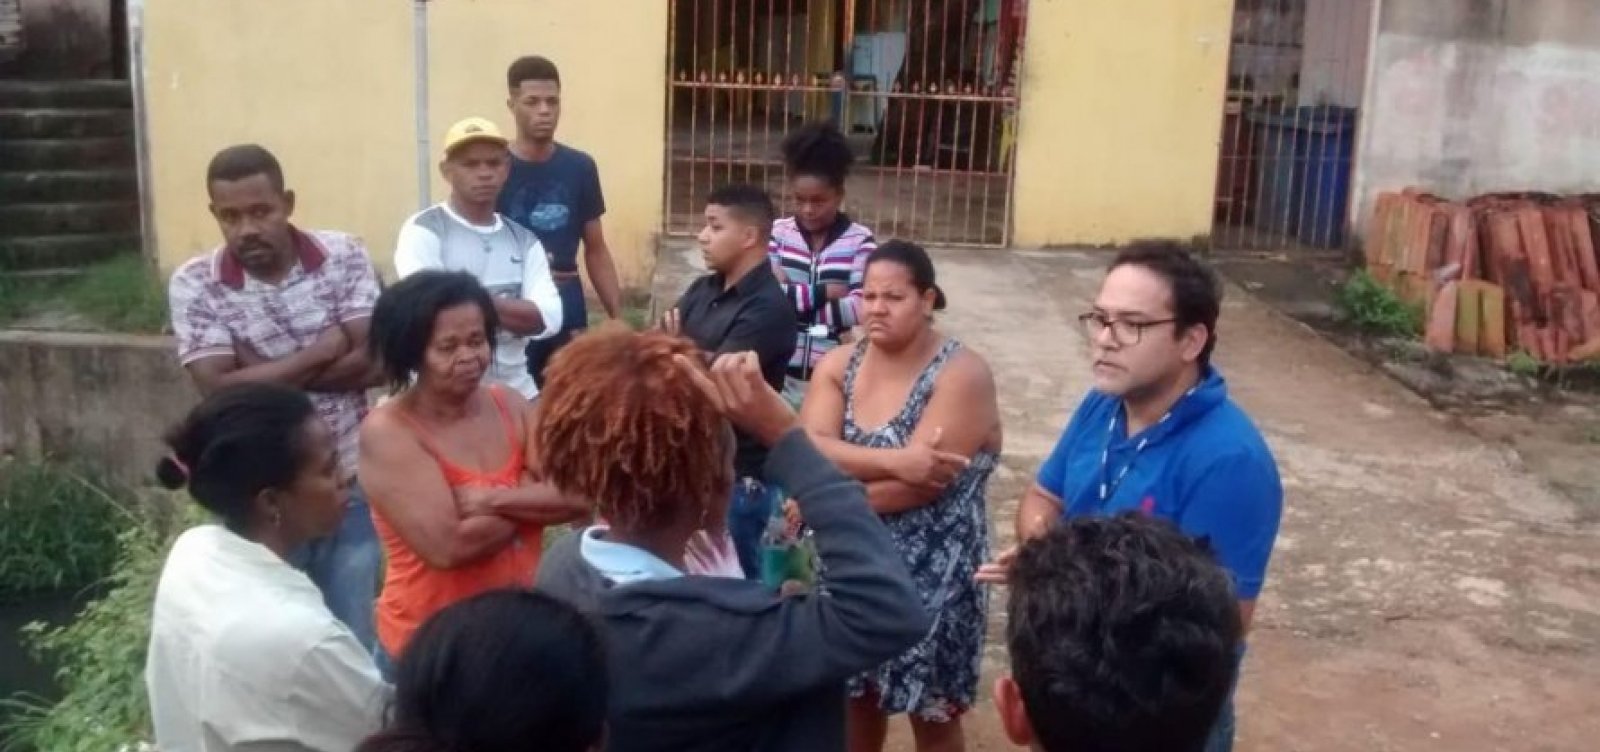 Moradores saem de casa após sirene da barragem de Pituaçu disparar 